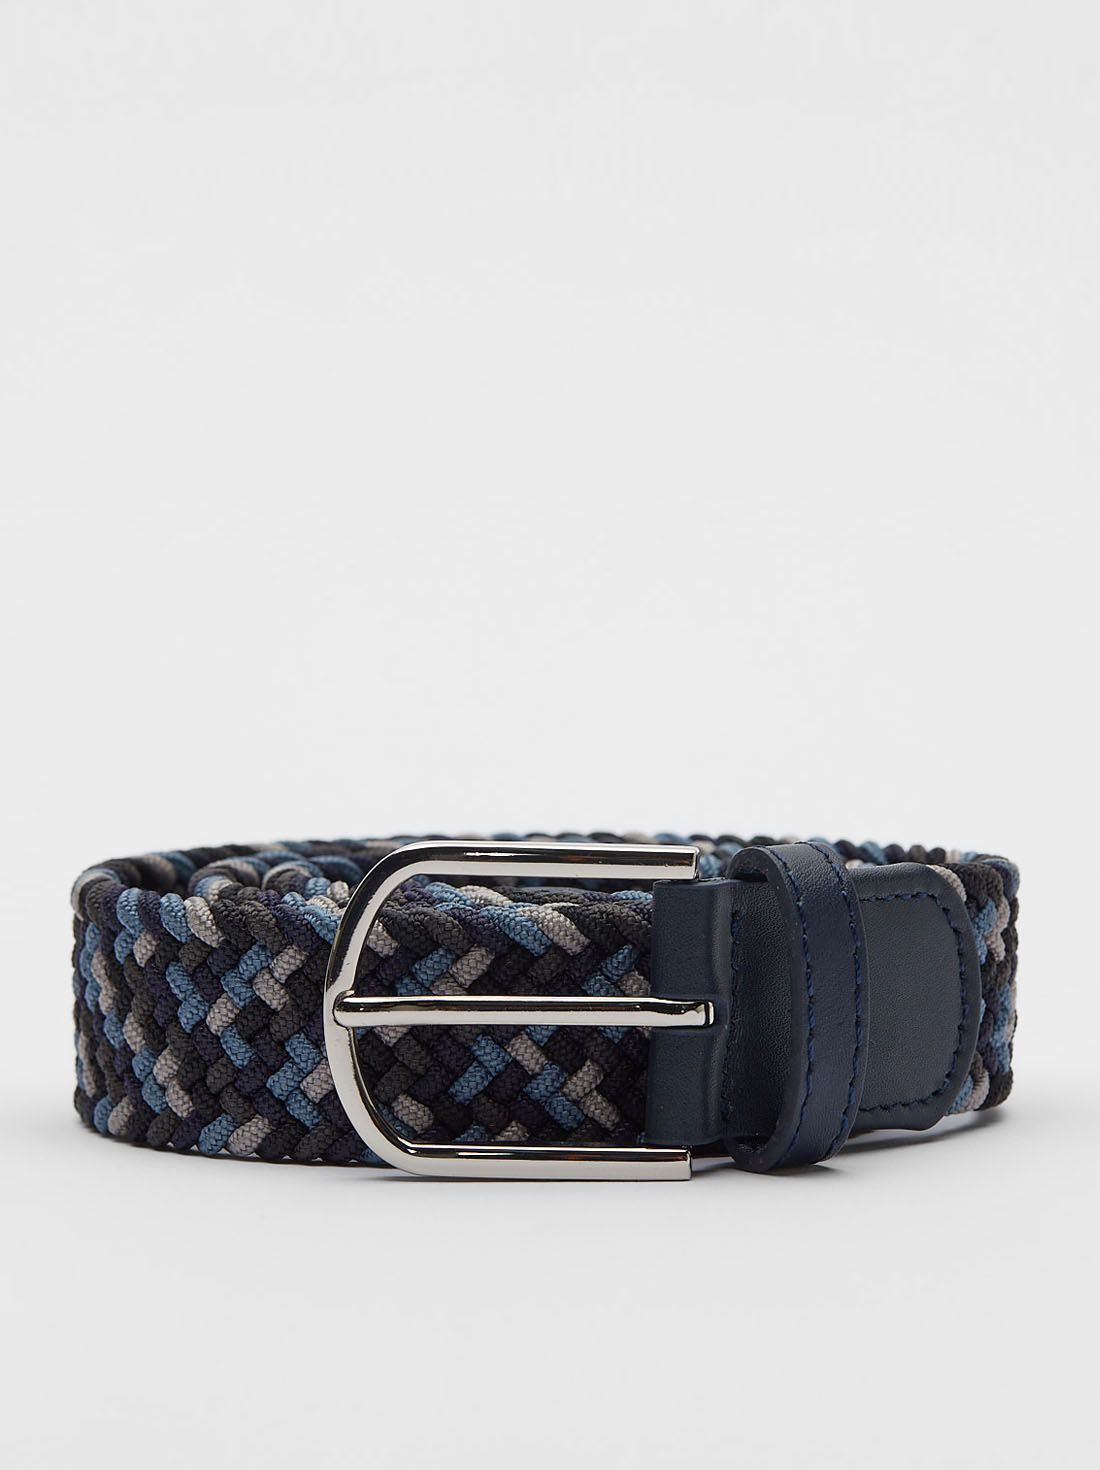 Blue & Grey Braided Belt